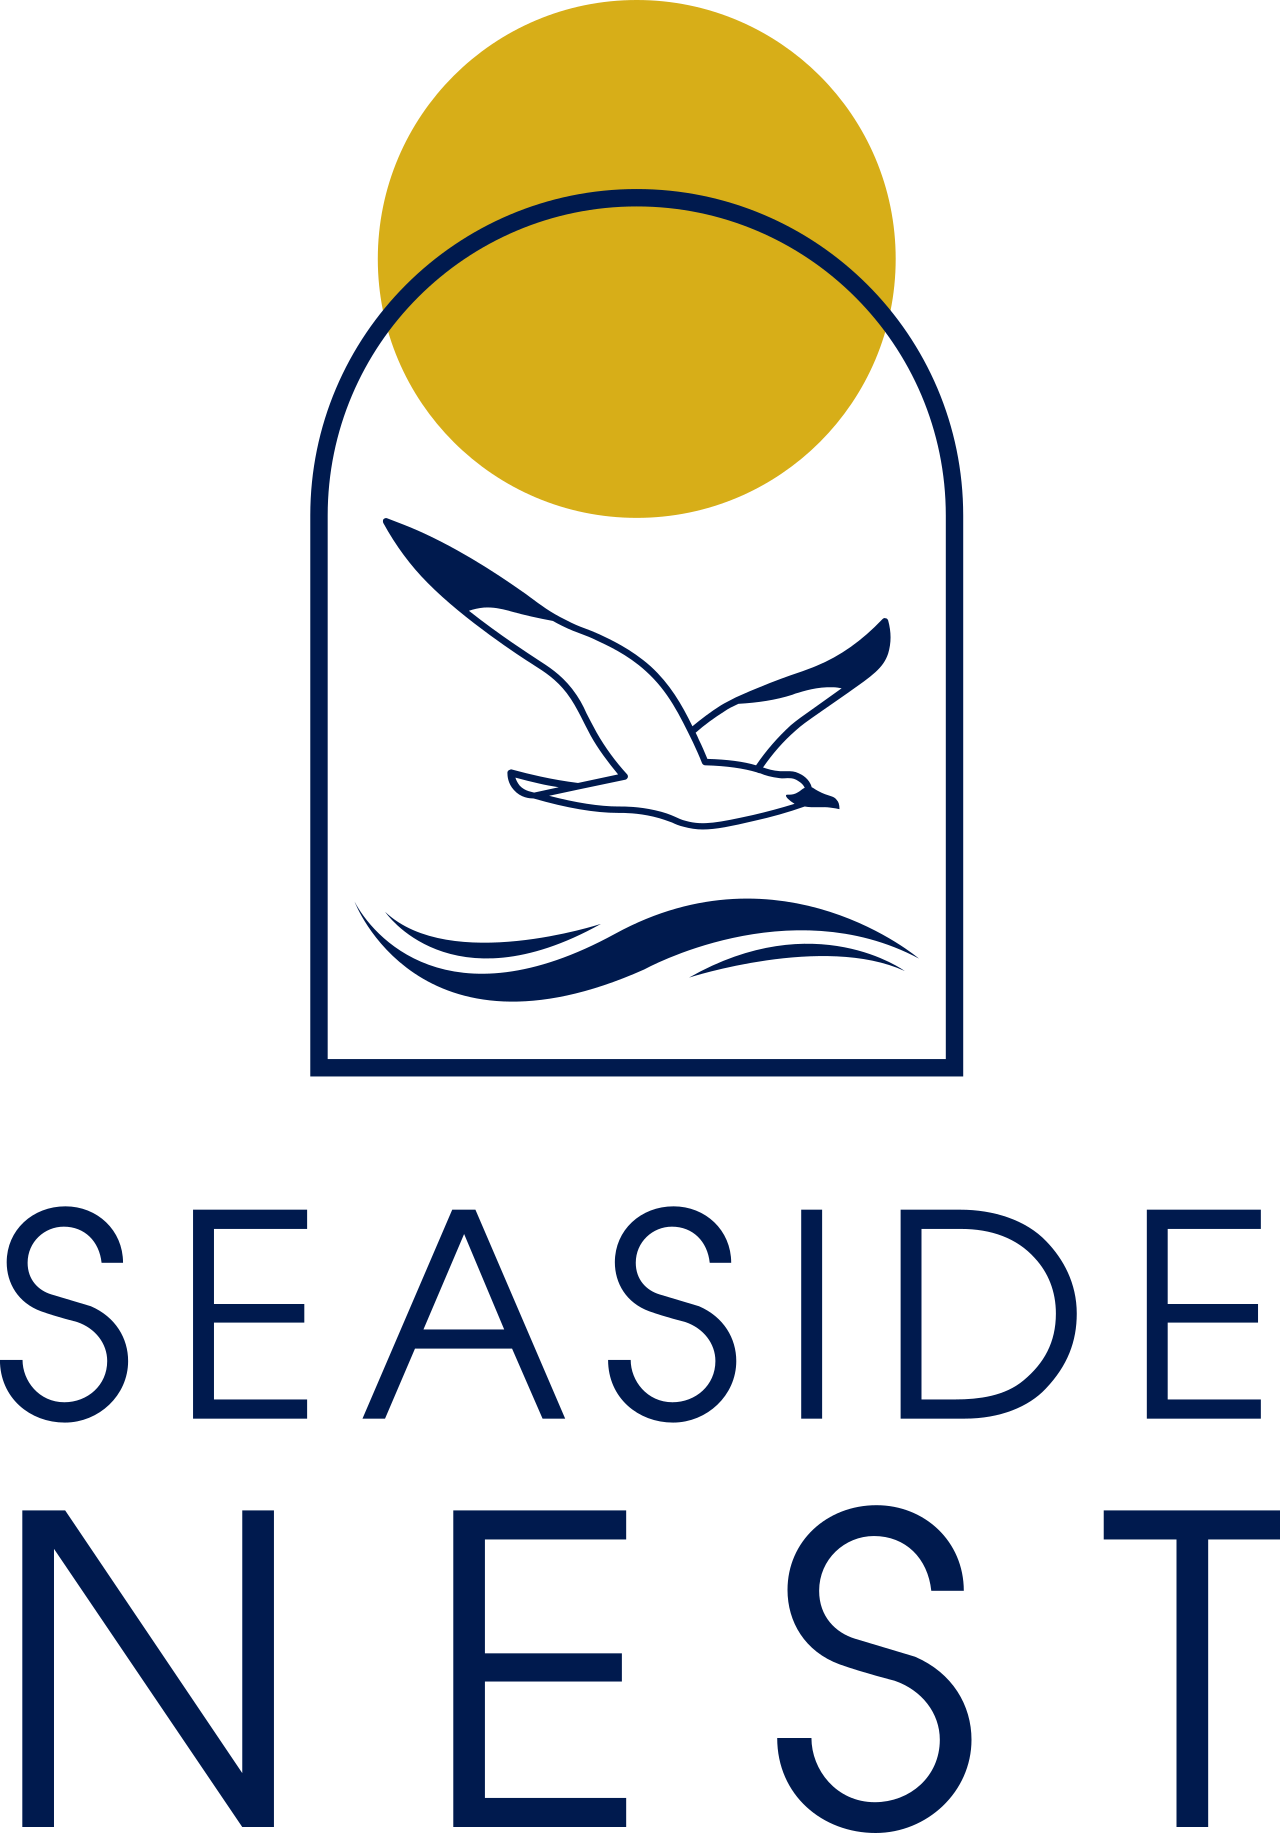 Seaside Nest Gilchrist's logo